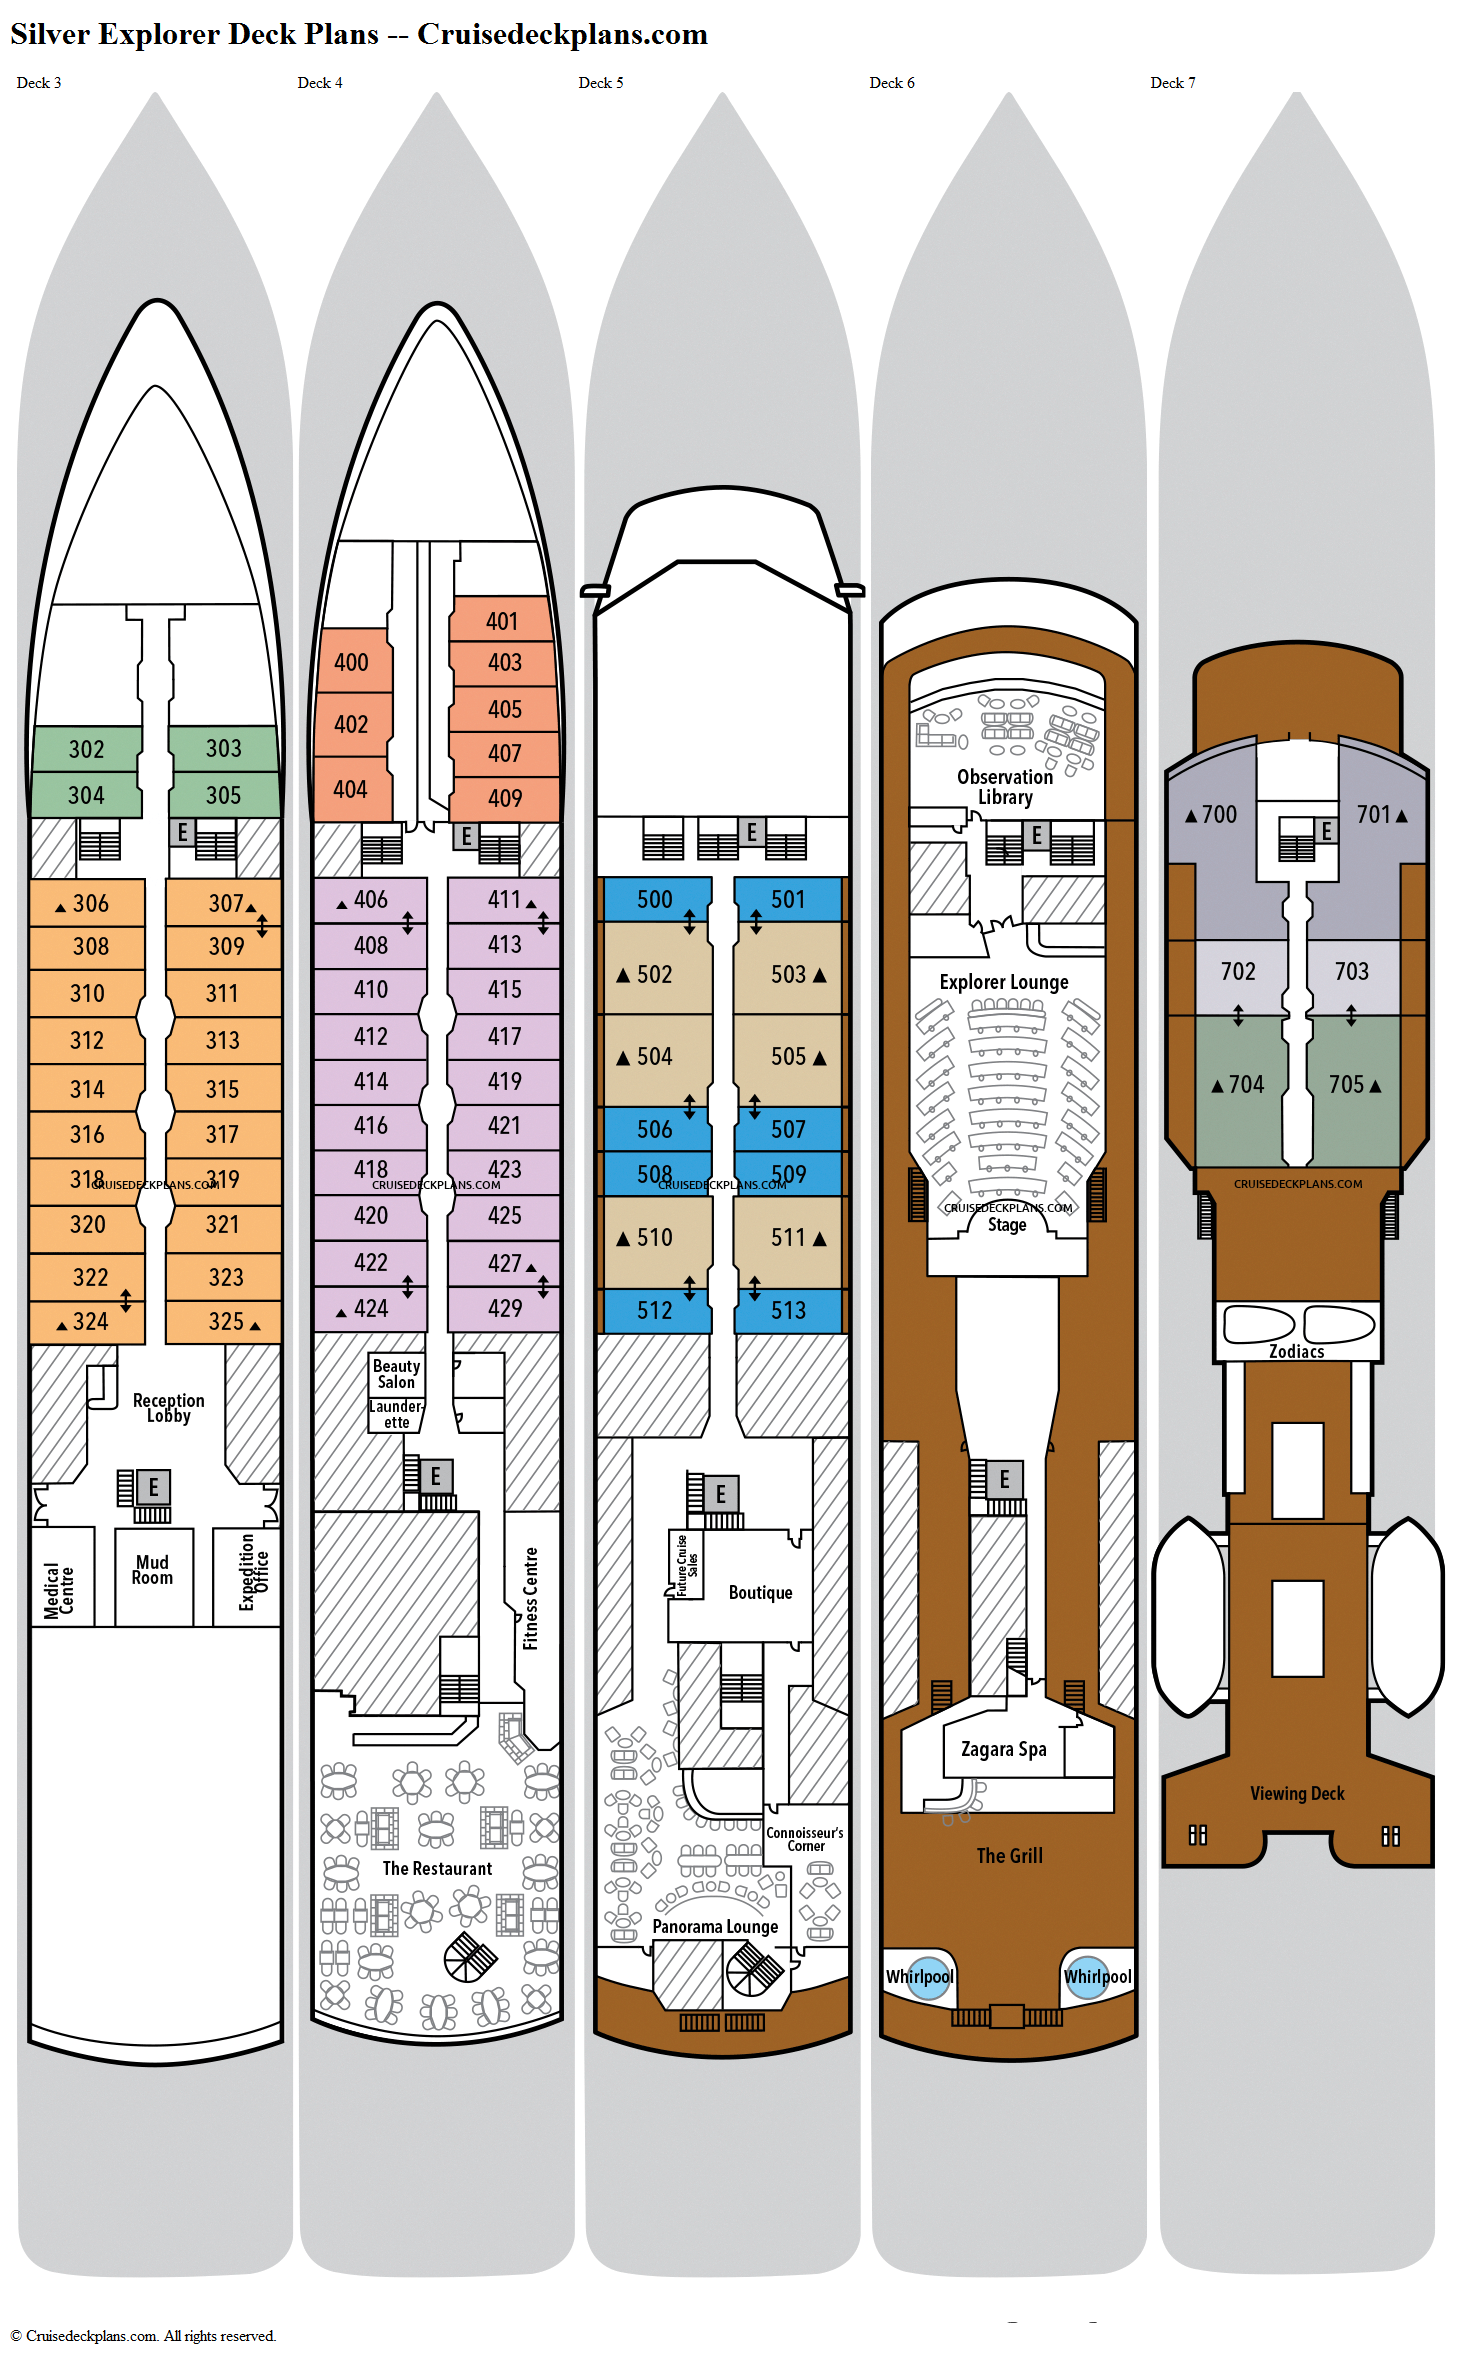 bolette cruise ship deck plans